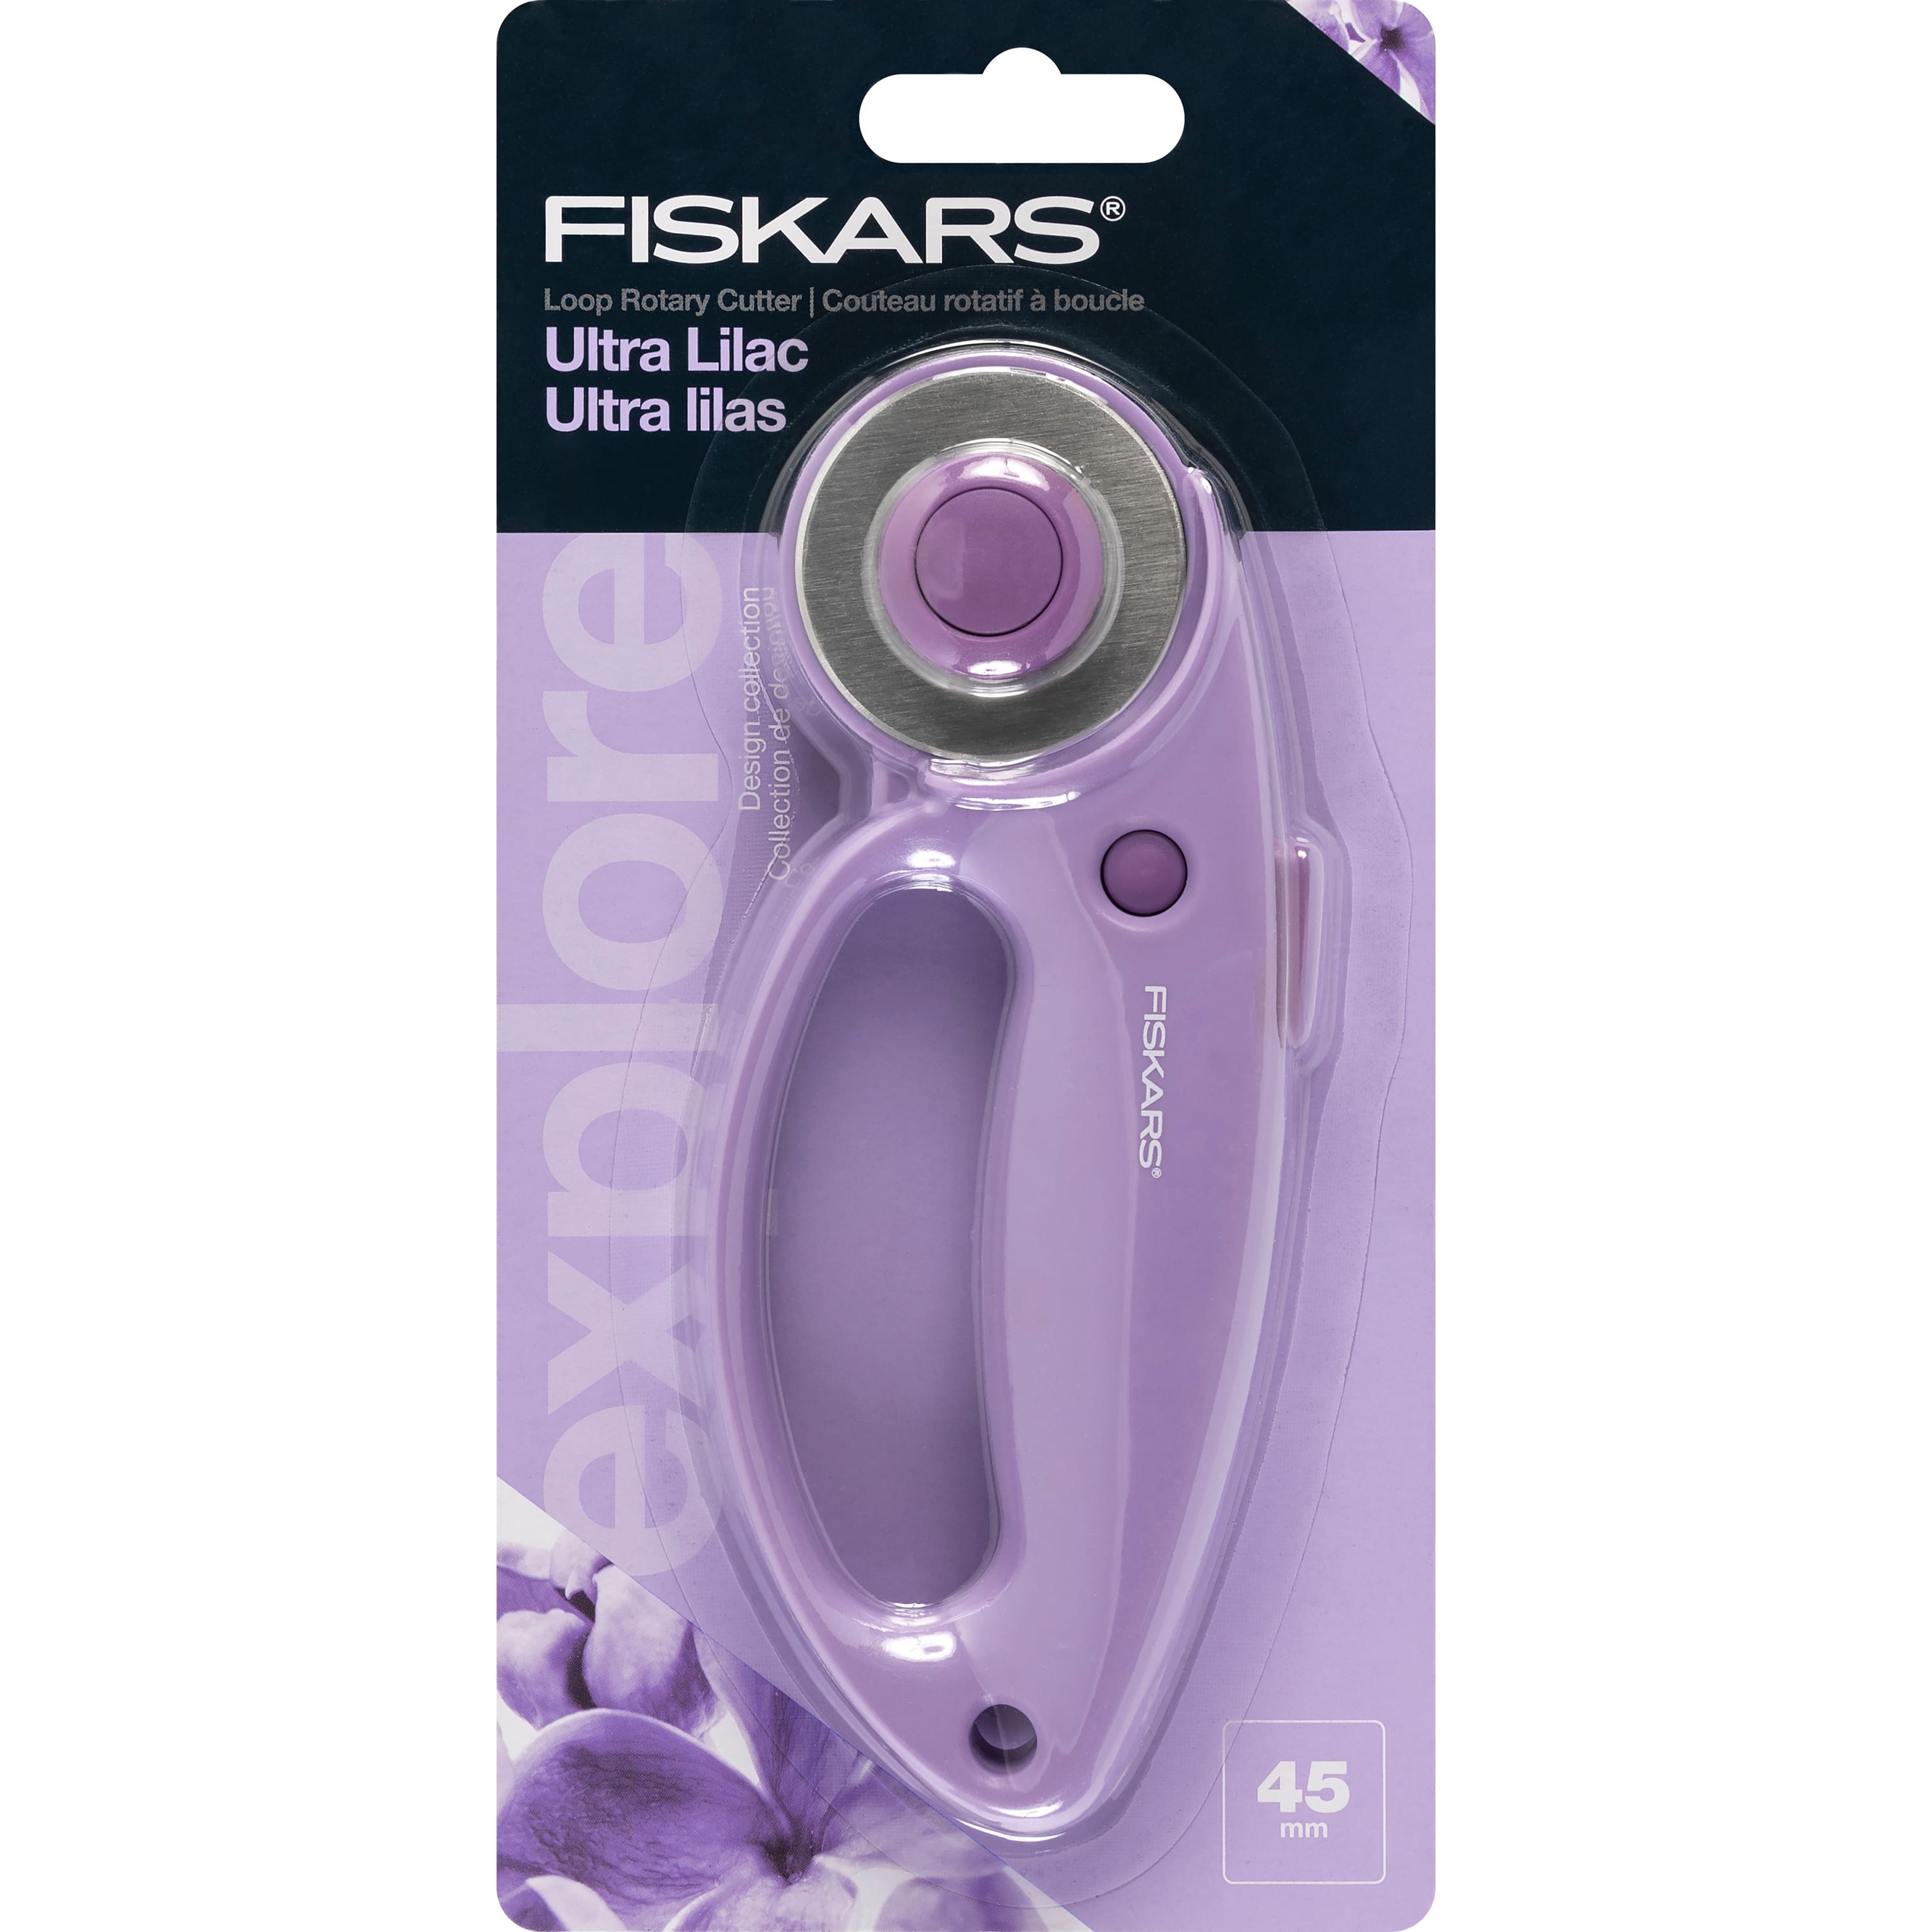 Fiskars® 60mm Rotary Blade